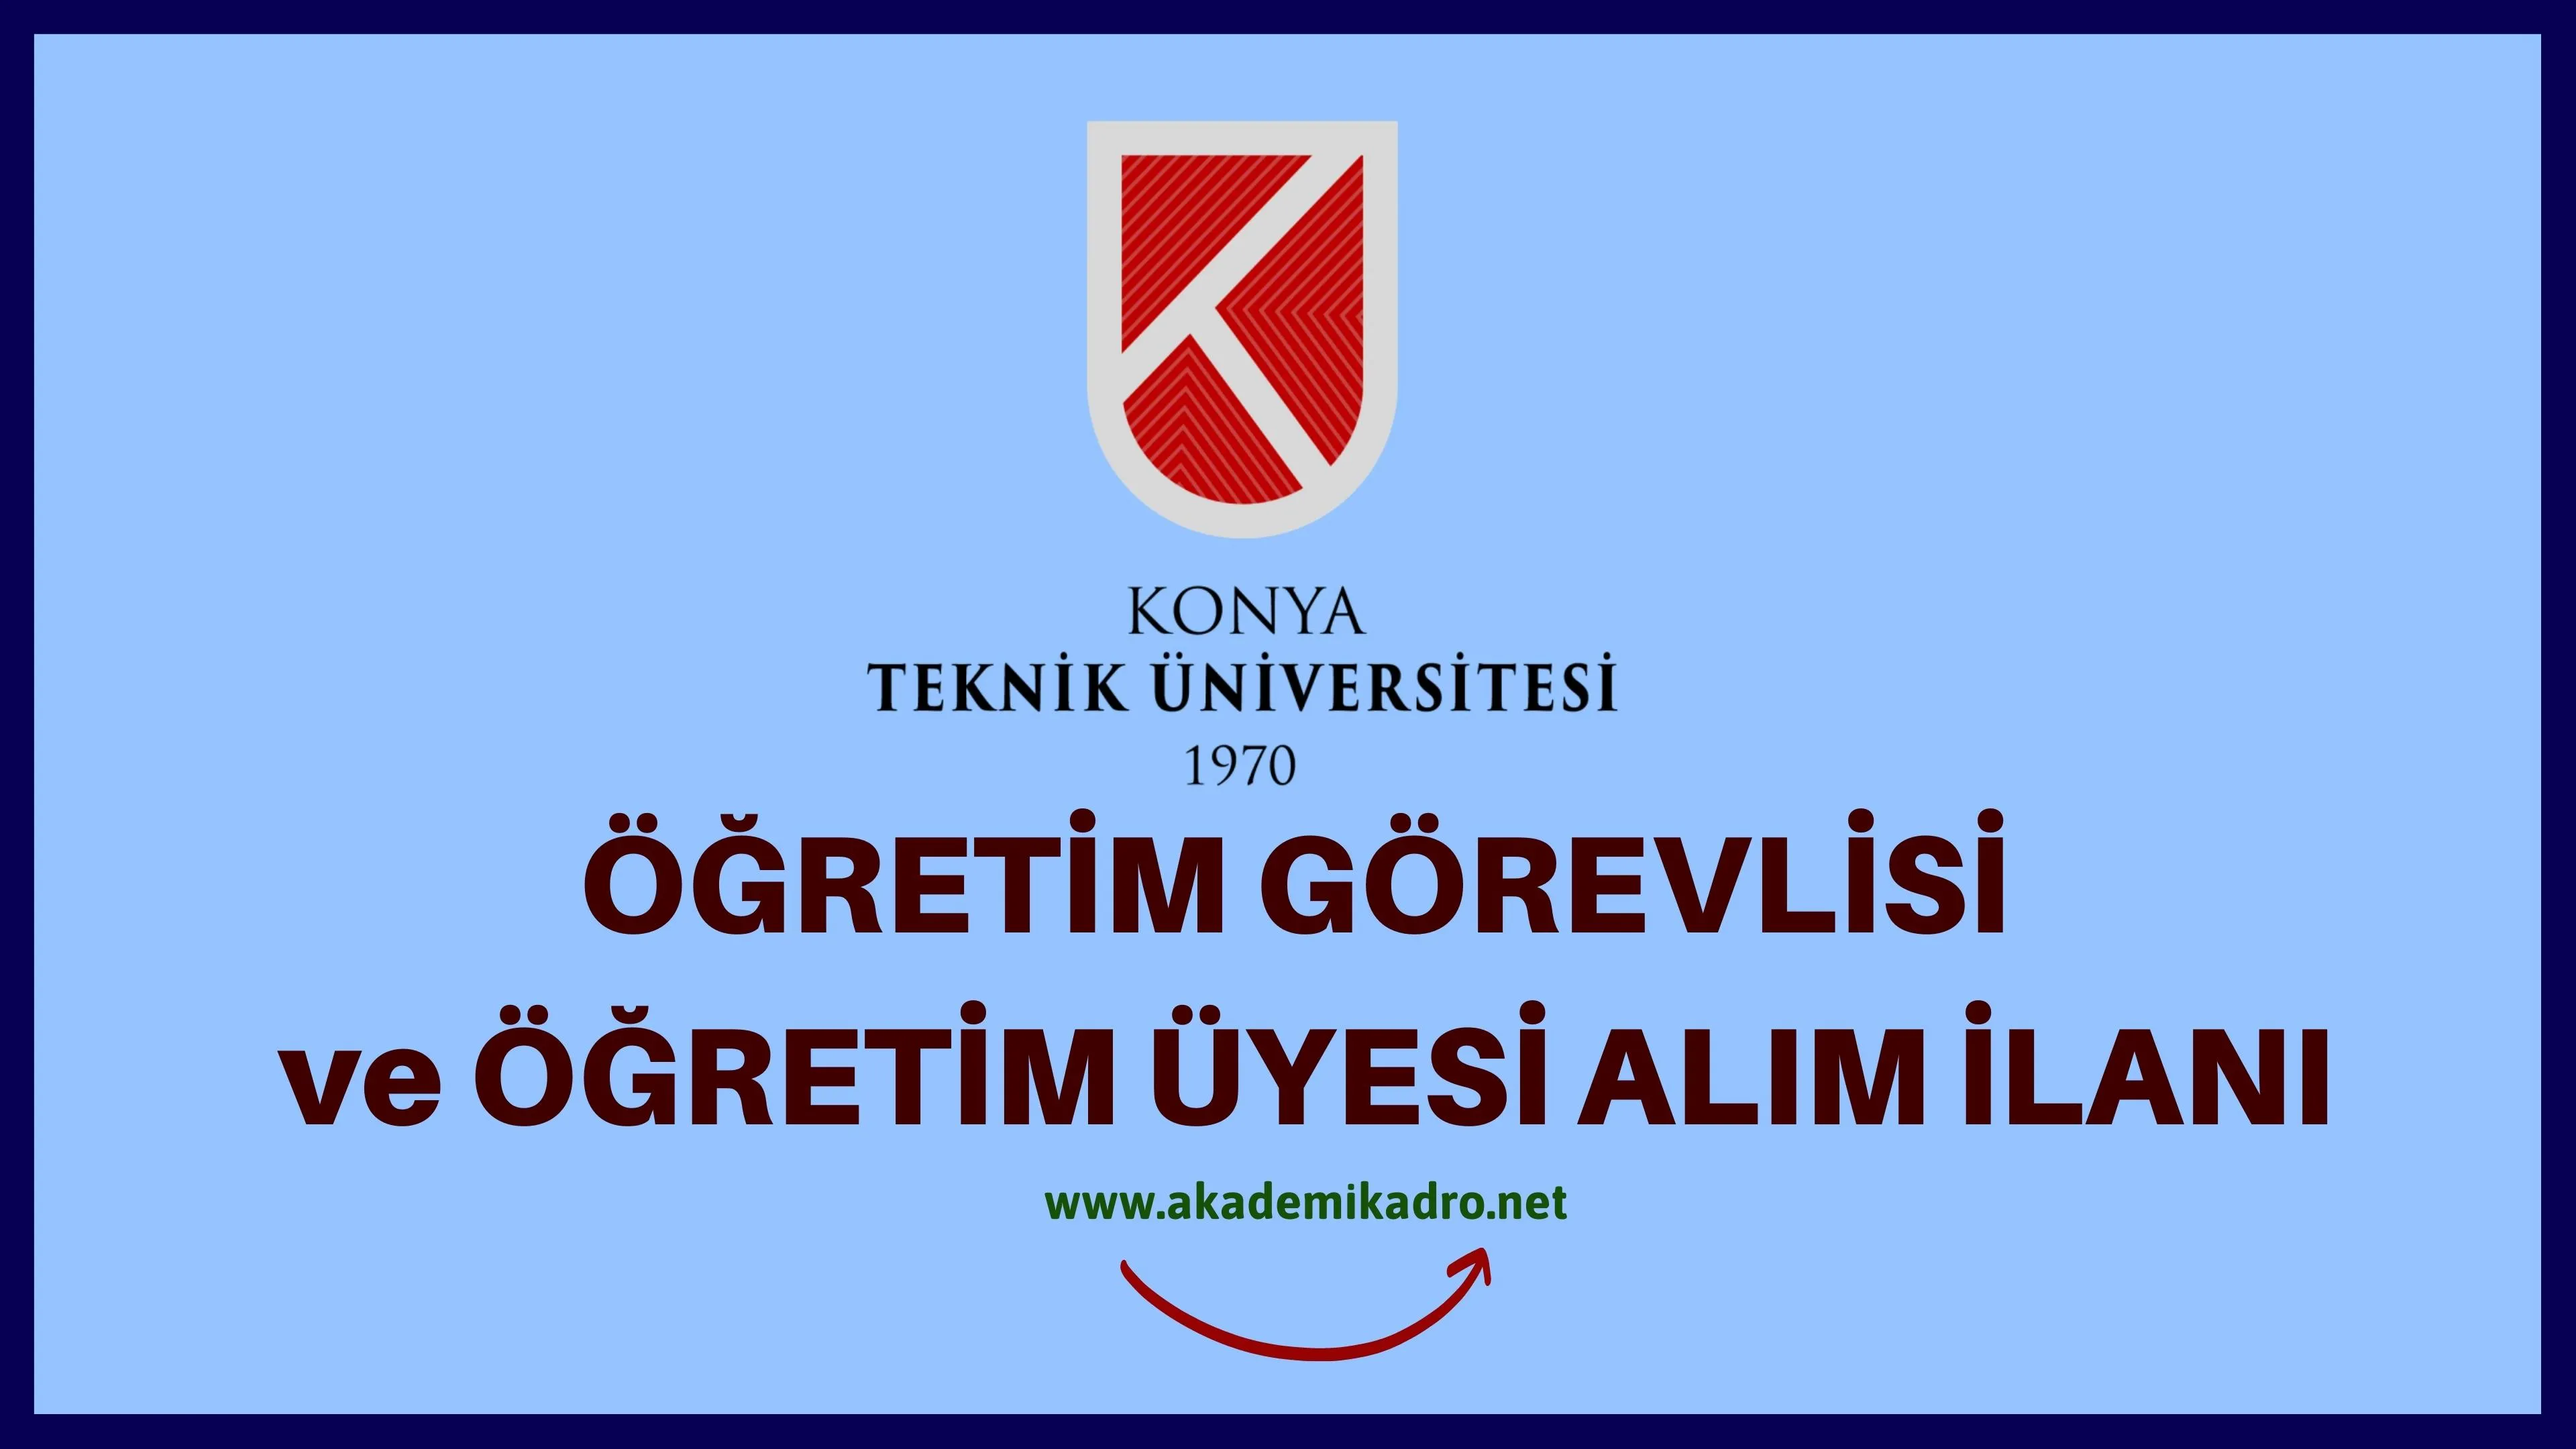 Konya Teknik Üniversitesi 7 Öğretim üyesi ve 4 Öğretim Görevlisi alacaktır. Son başvuru tarihi 12 Eylül 2022